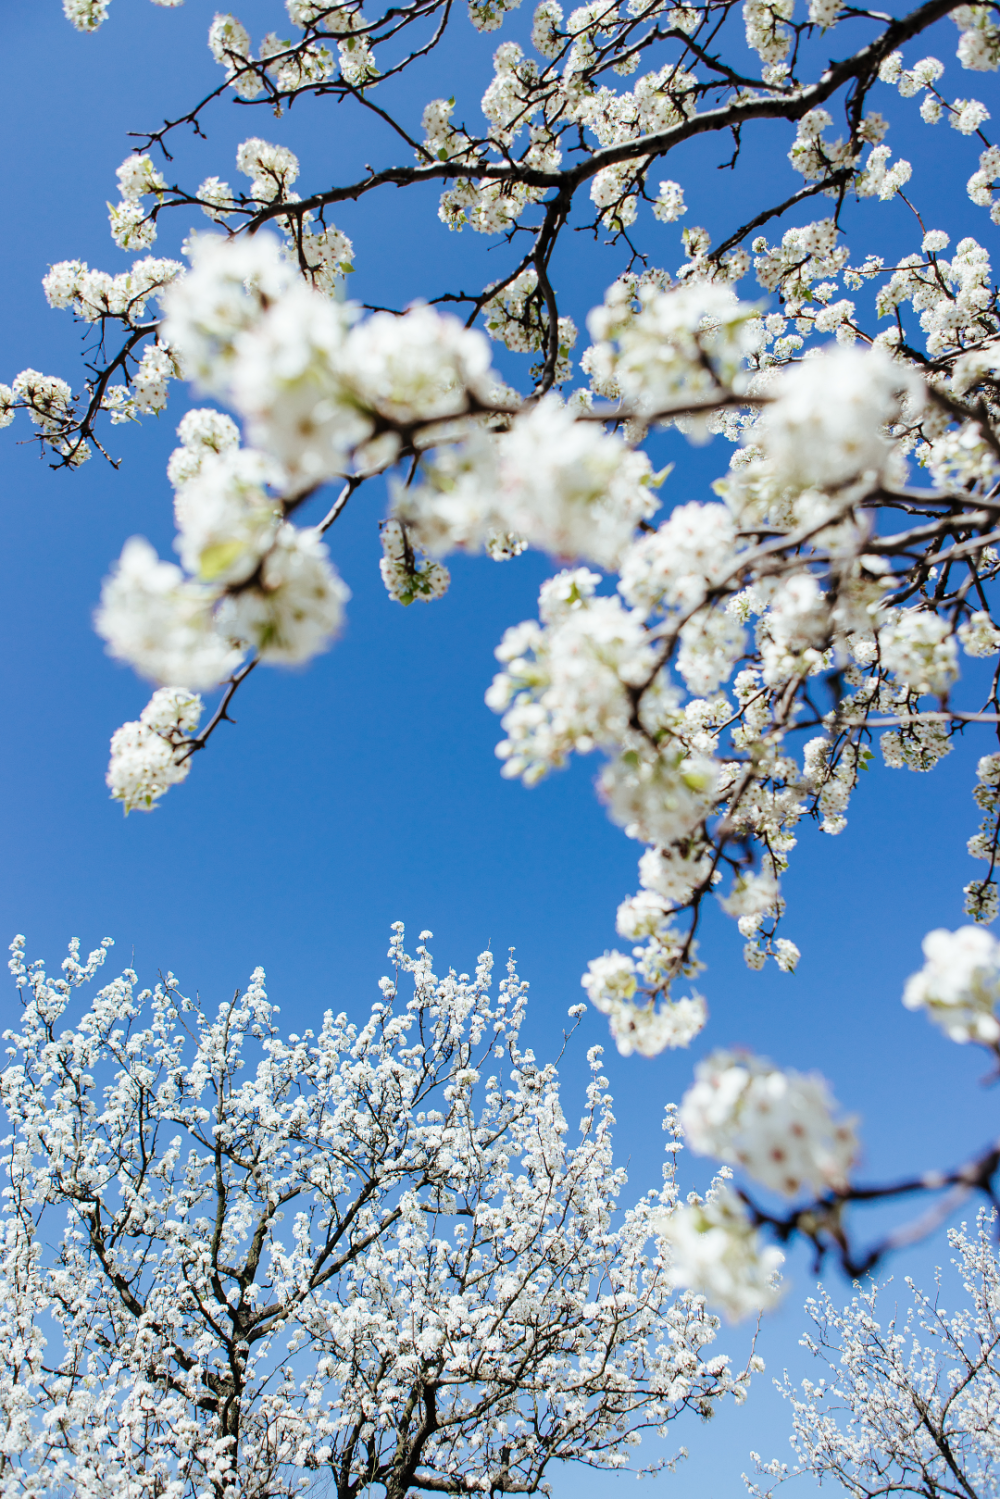 月季园桥头,樱花大道豆梨,梨属落叶乔木,花白色,排列为伞形花序,花后